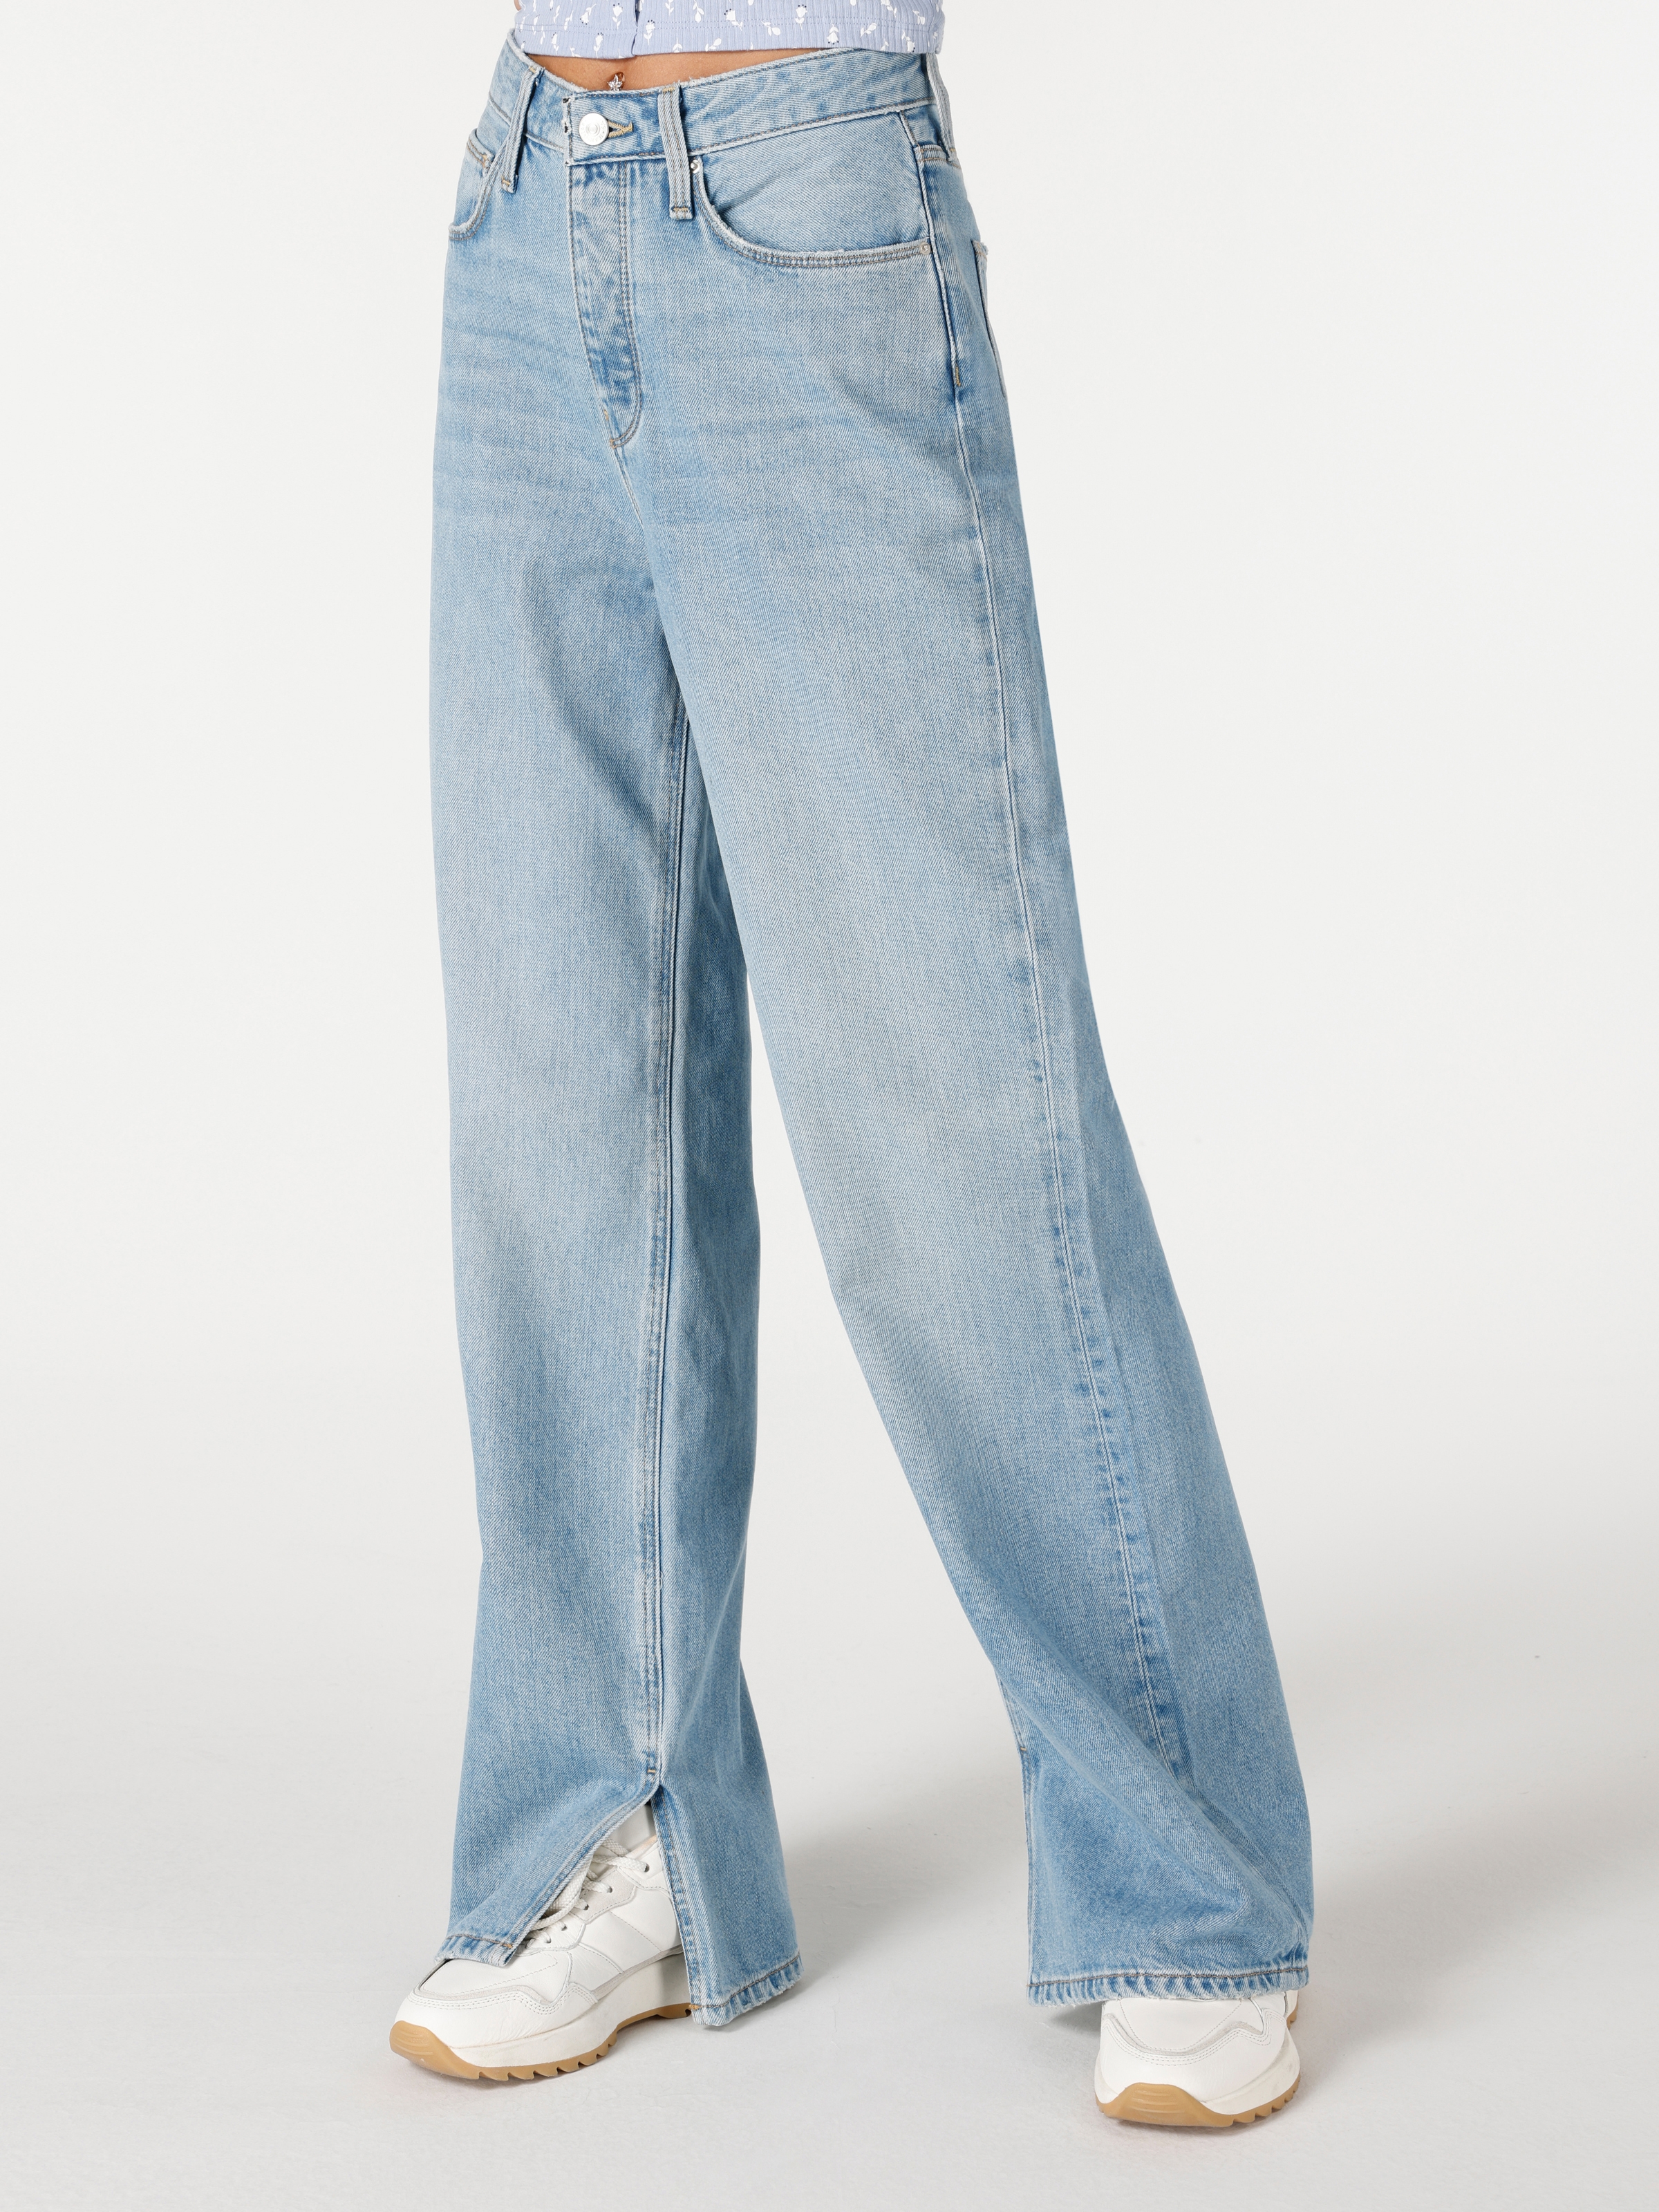 Afficher les détails de Pantalon En Jean À Jambe Large Taille Haute Coupe Régulière Pour Femme